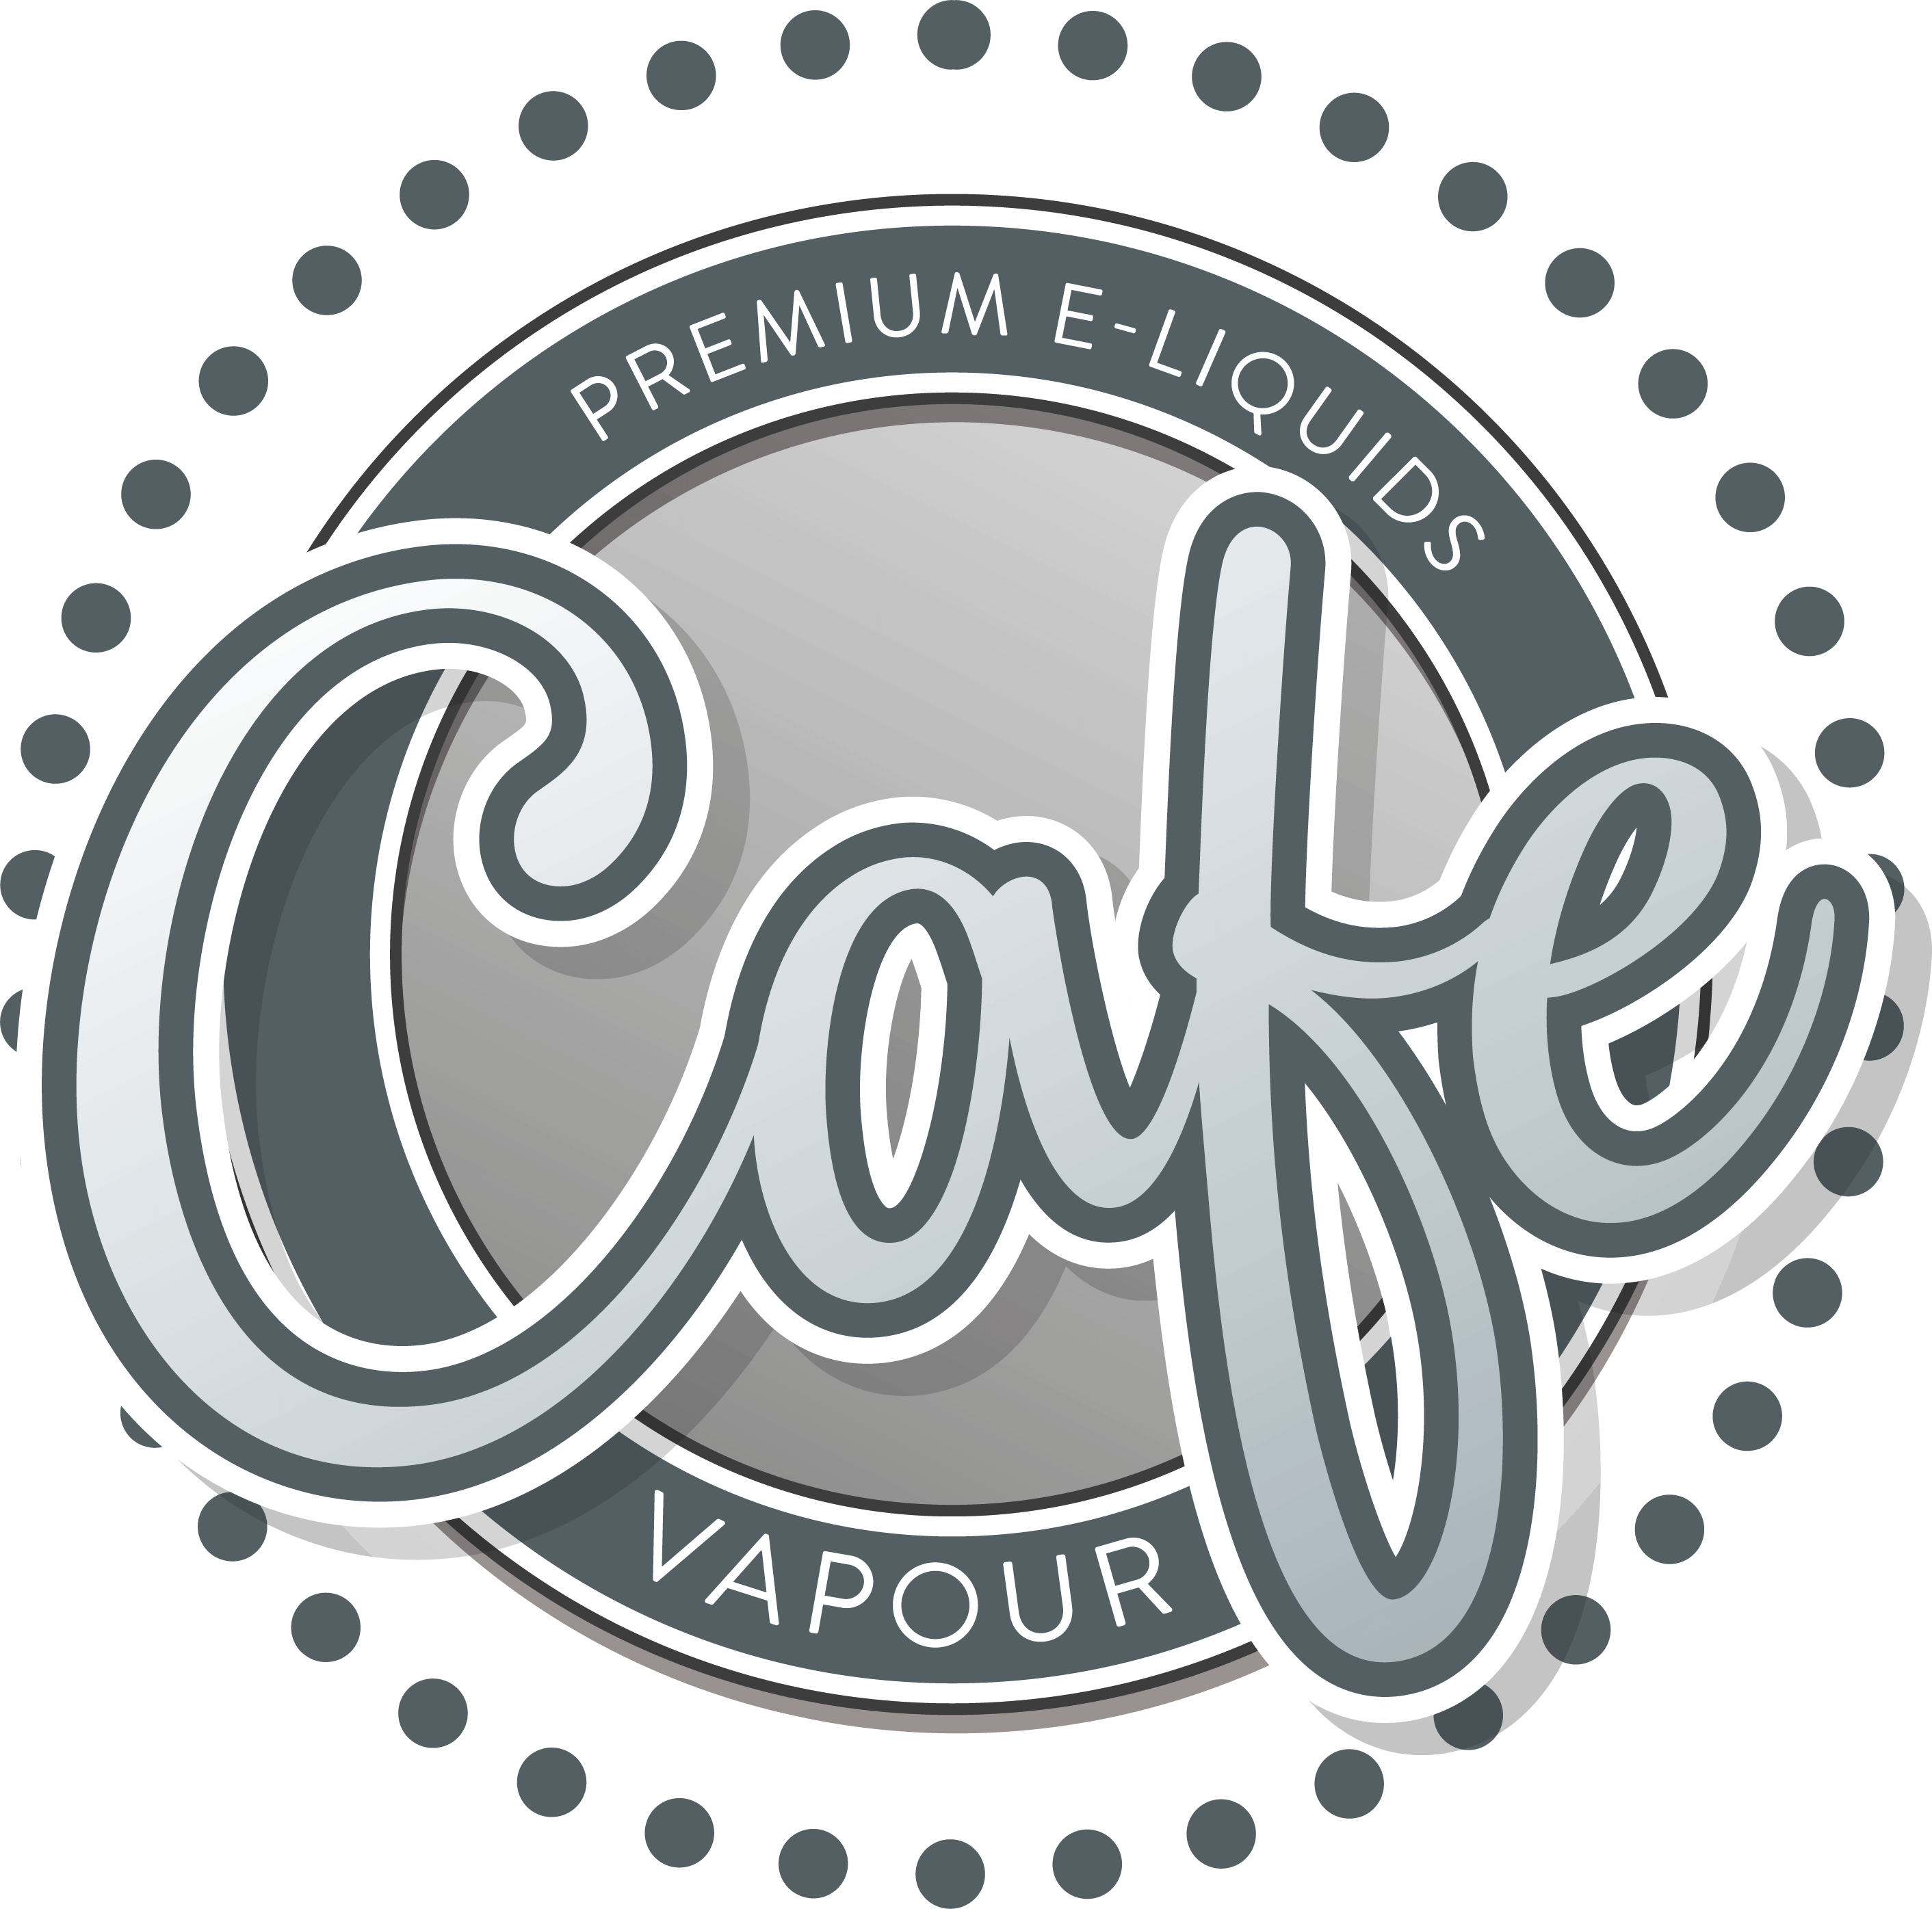 Premium e-liquids, cafe logo uk